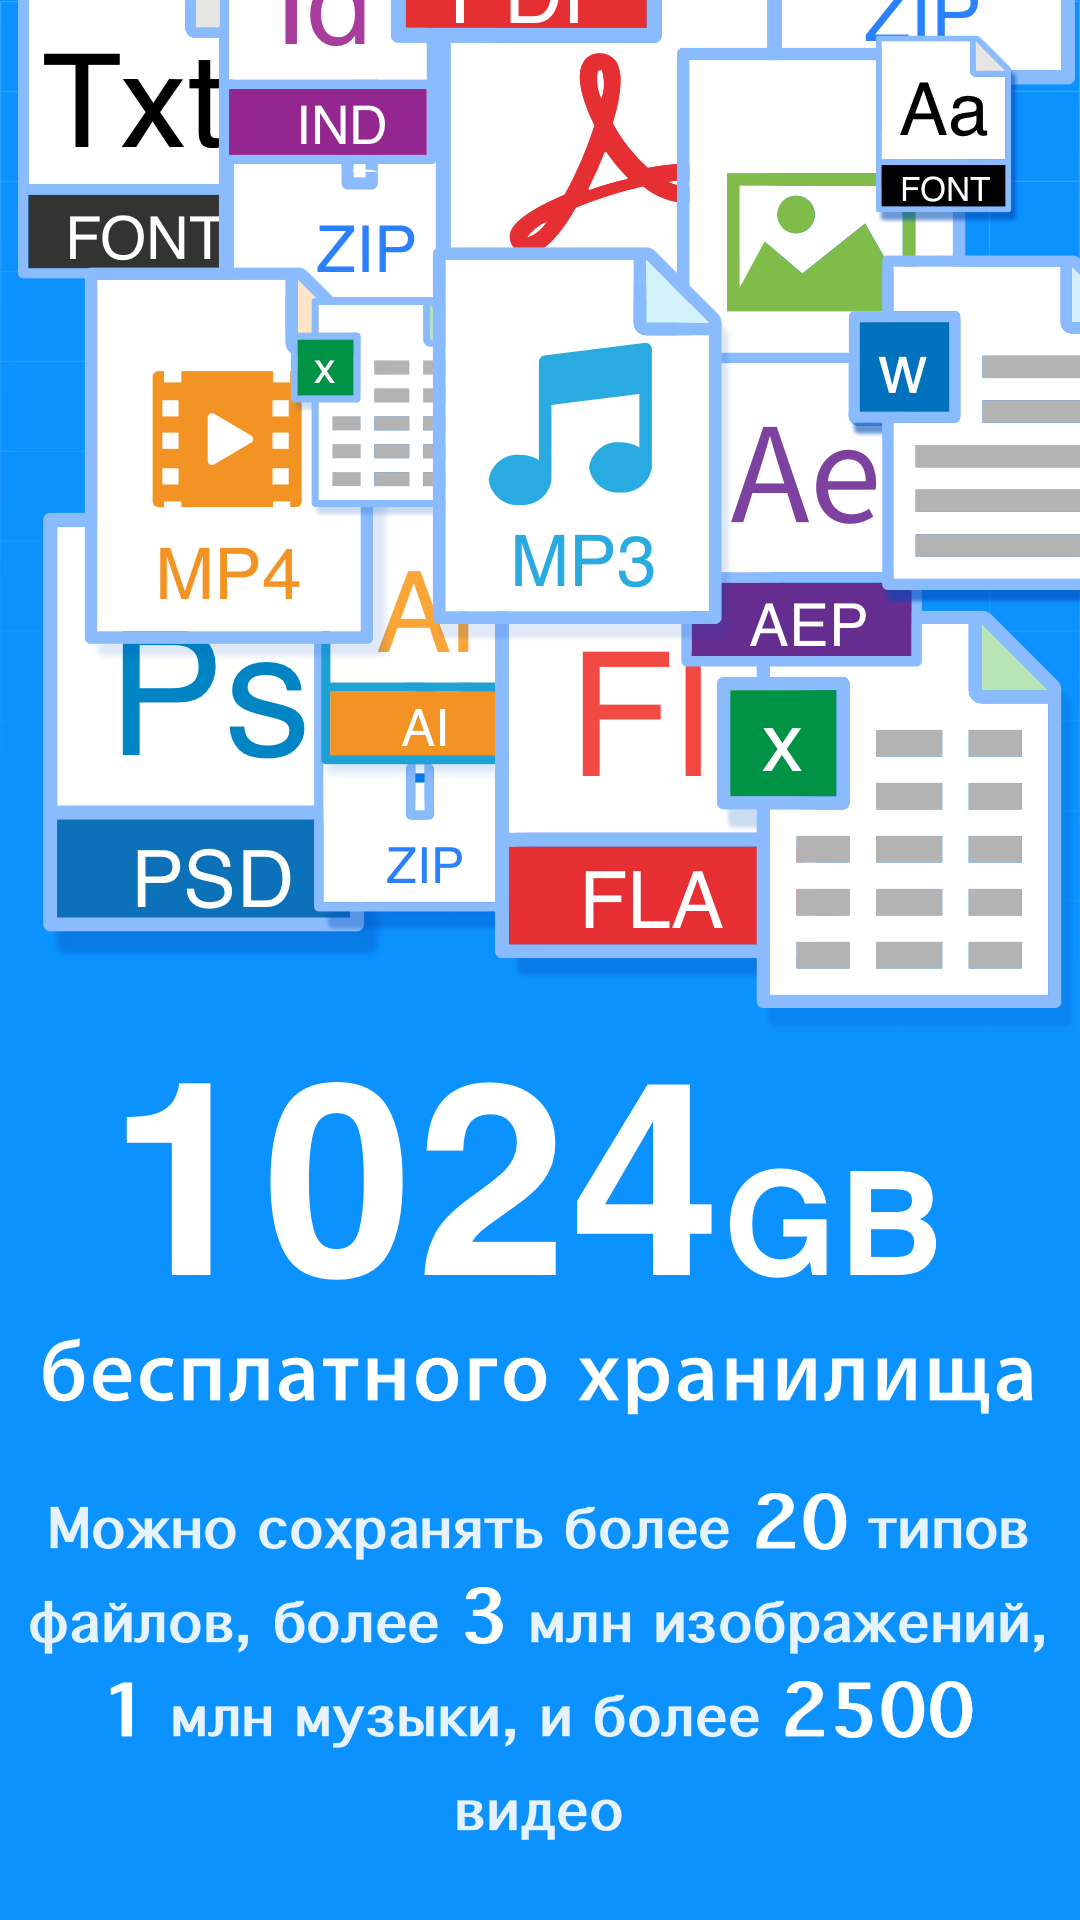 1024 ГБ места для хранения файлов различных форматов